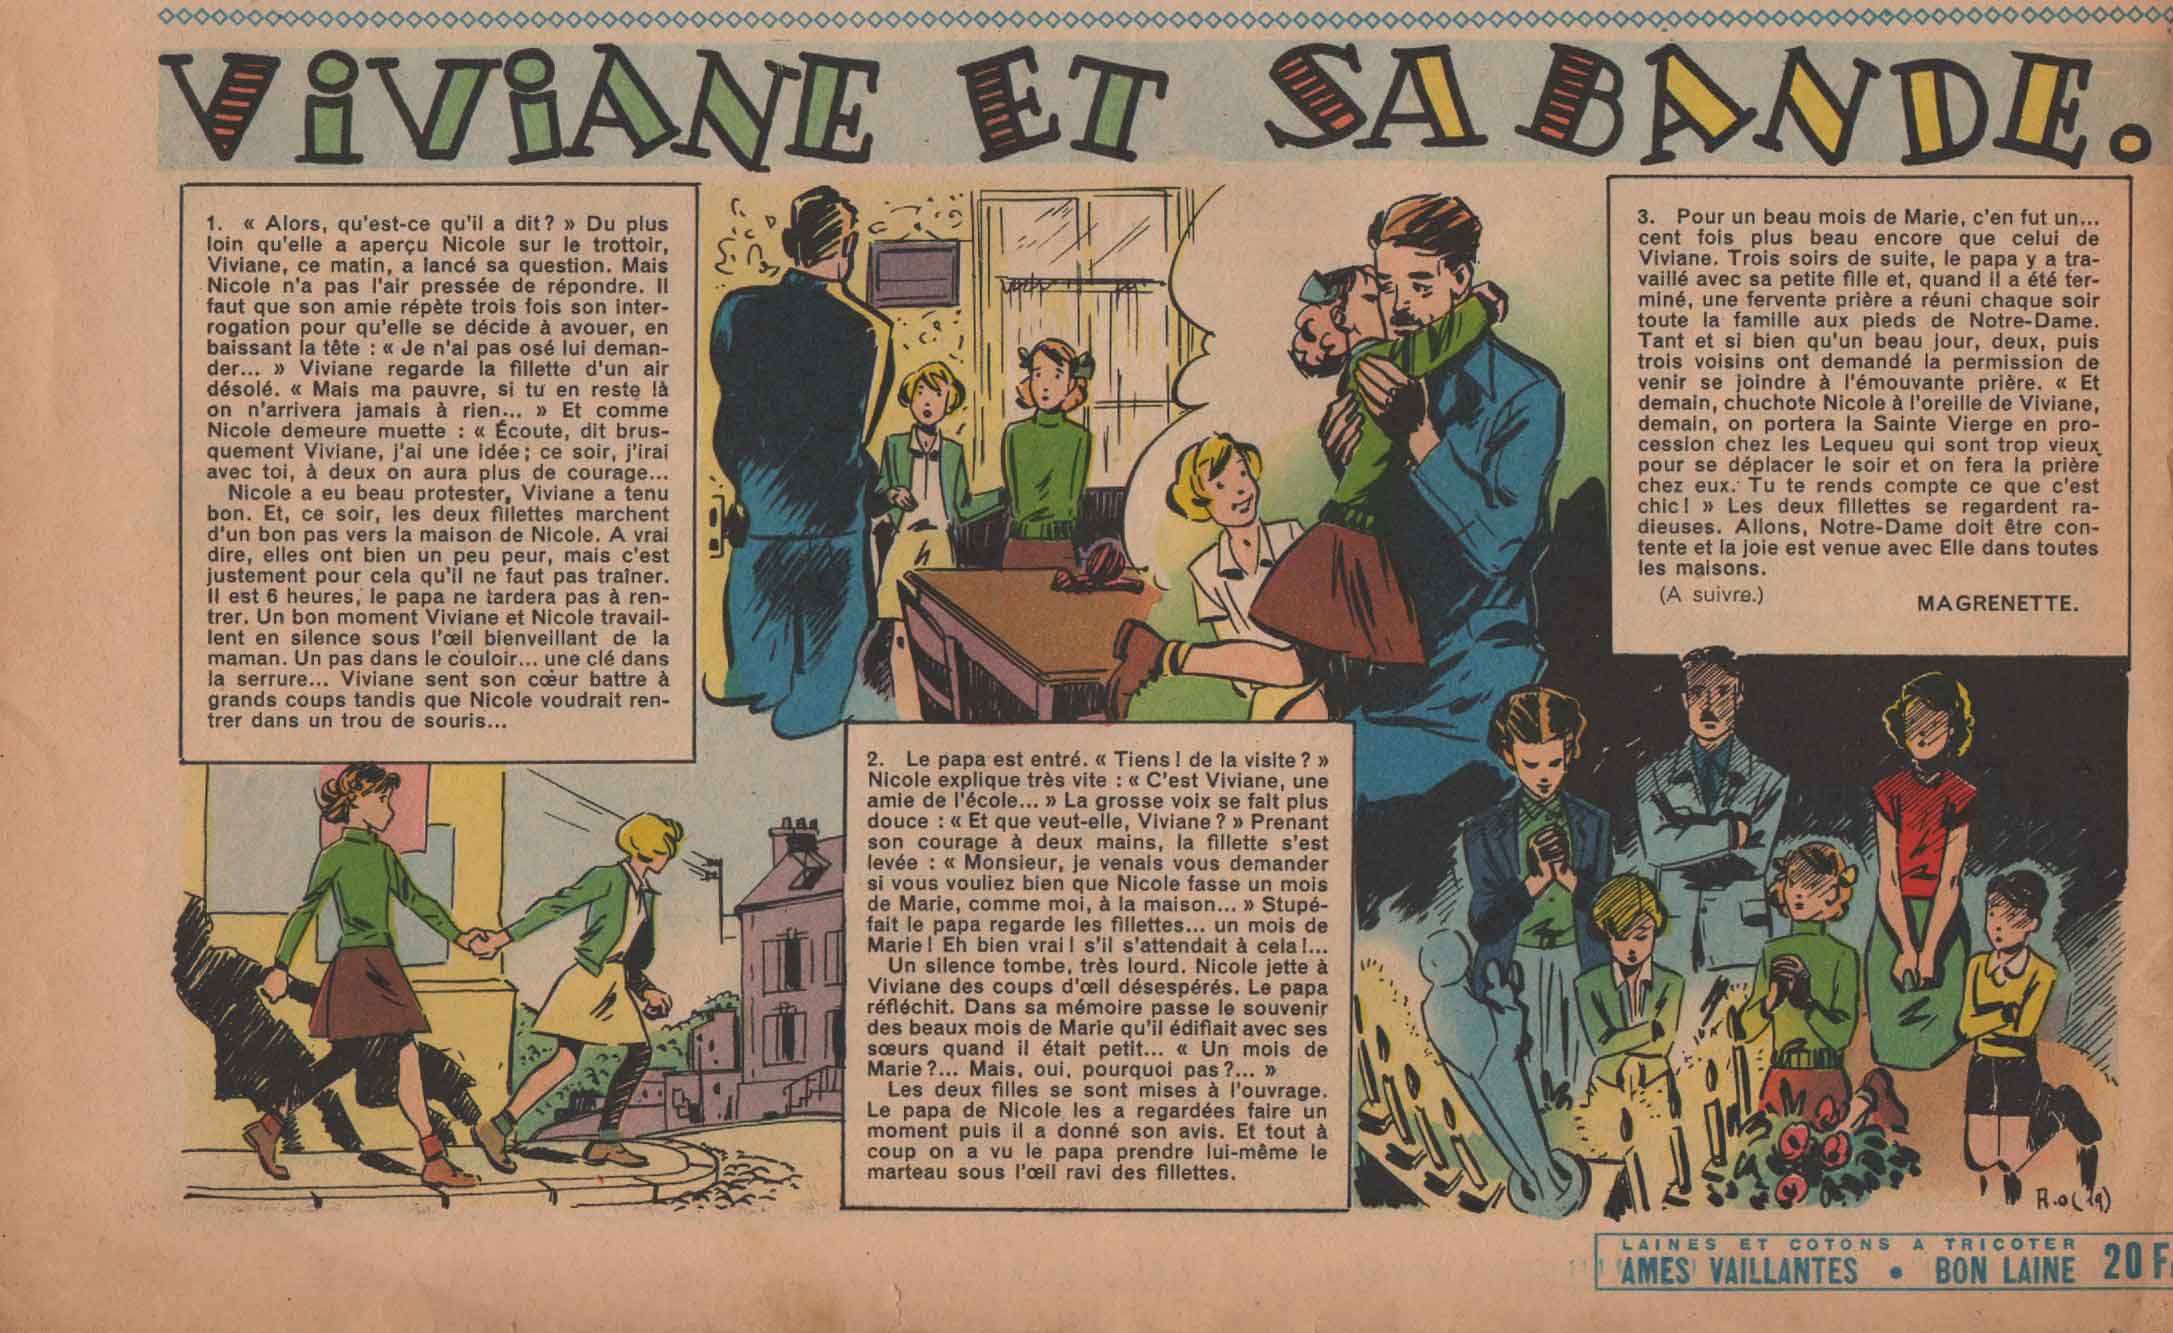 « Viviane et sa bande » Âmes vaillantes n° 19 (11/05/1952).